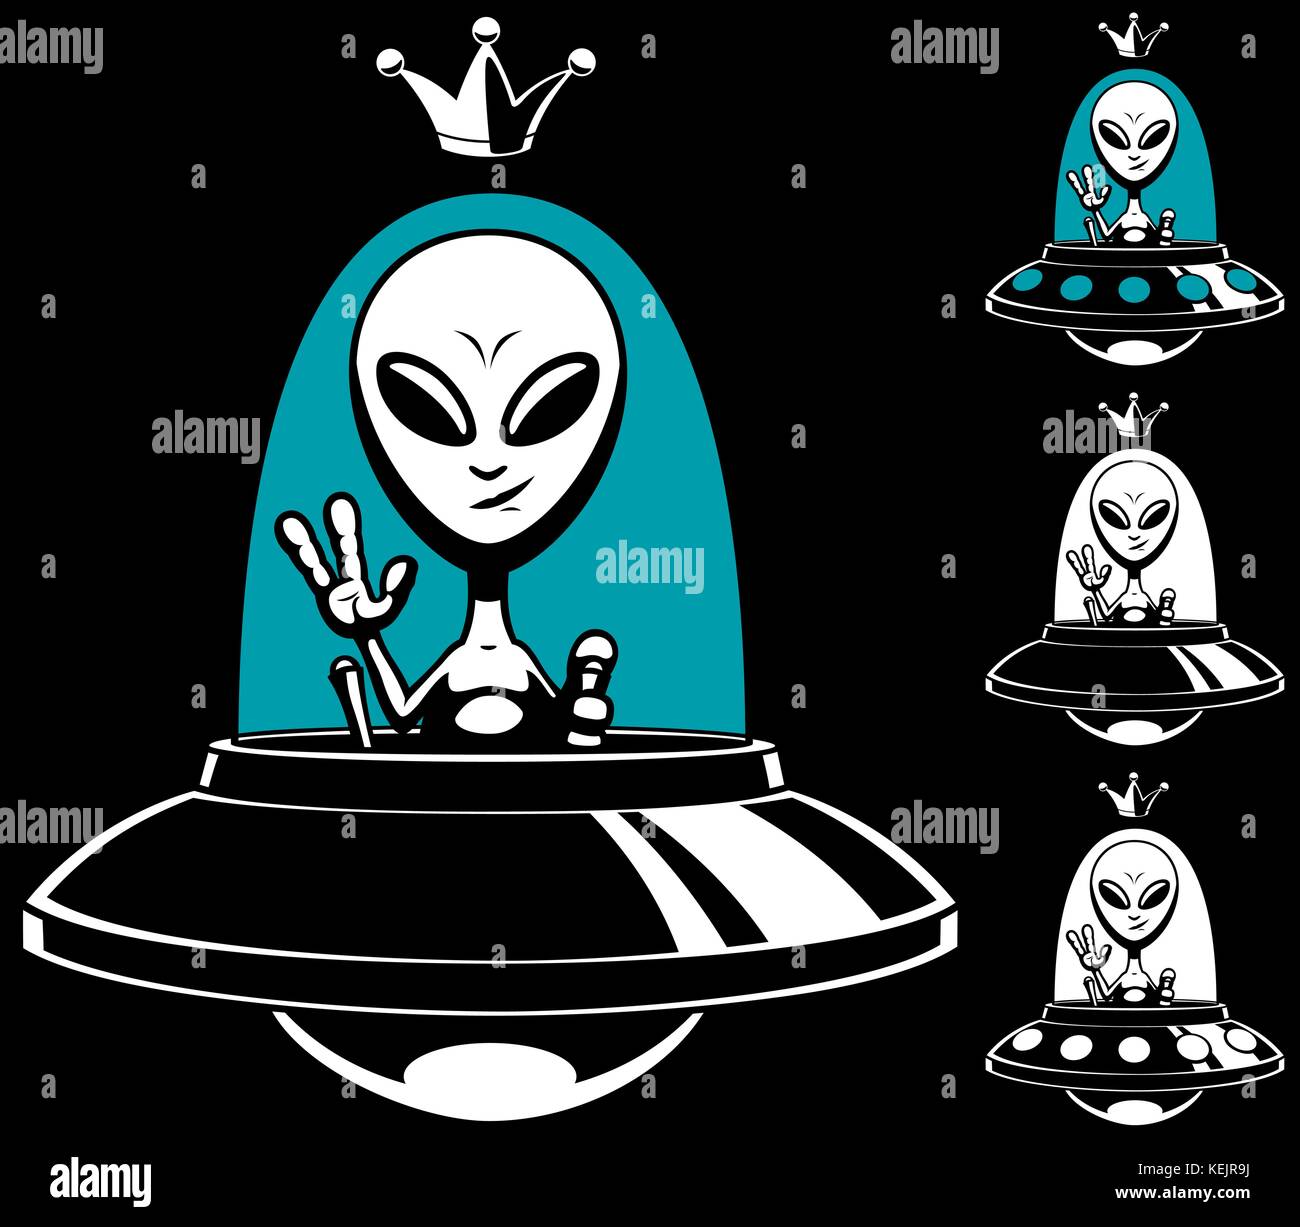 Roi alien de dessin animé dans sa soucoupe volante et en 4 versions. Illustration de Vecteur